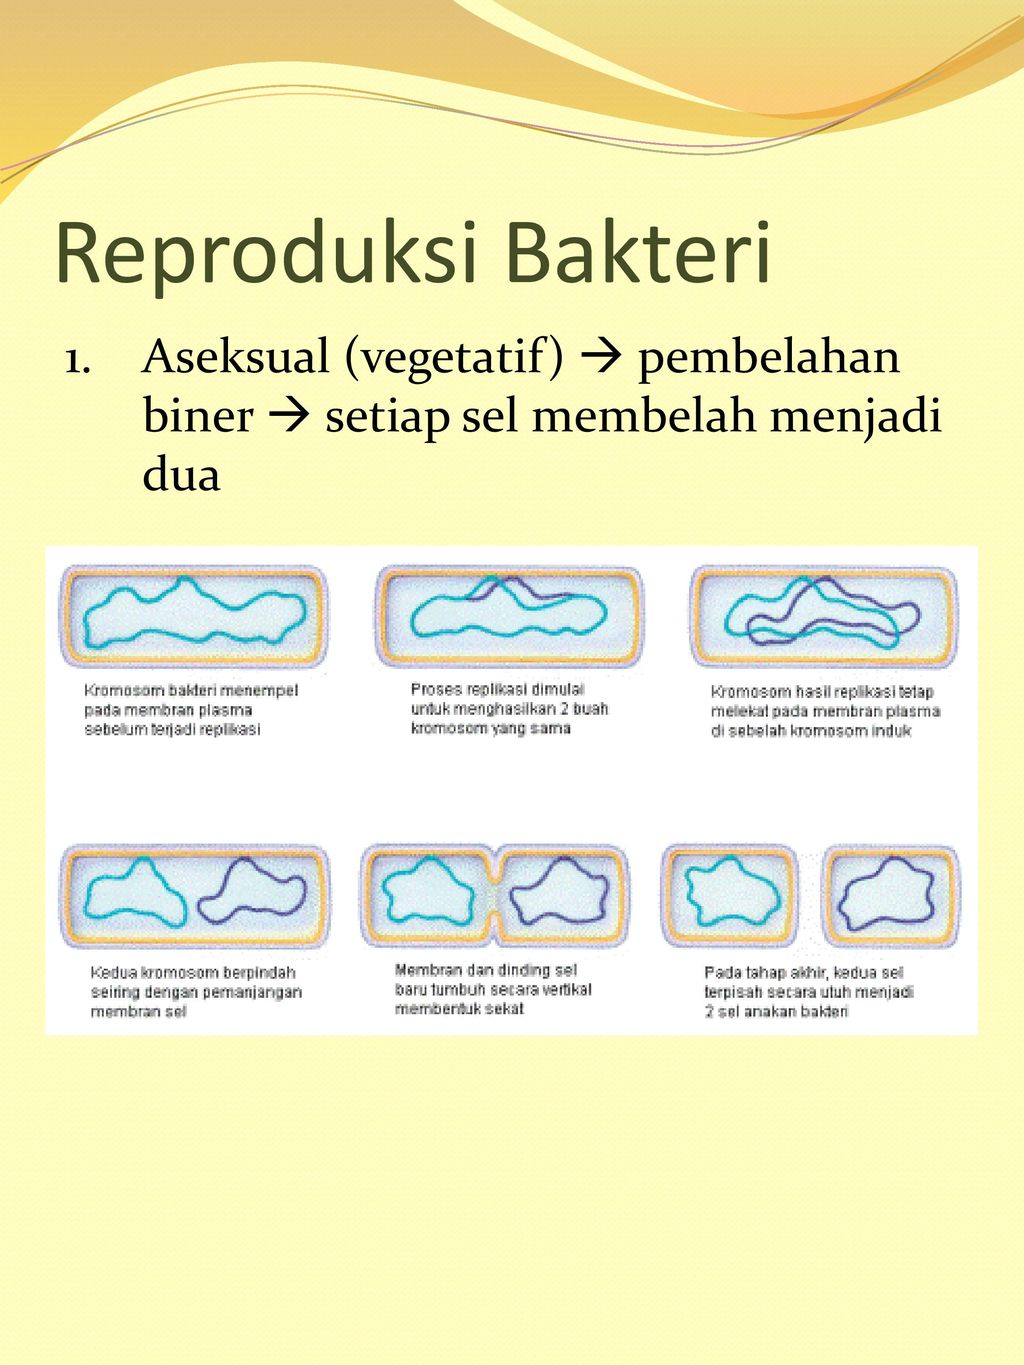 Reproduksi Bakteri 1. Aseksual (vegetatif)  pembelahan biner  setiap sel membelah menjadi dua.